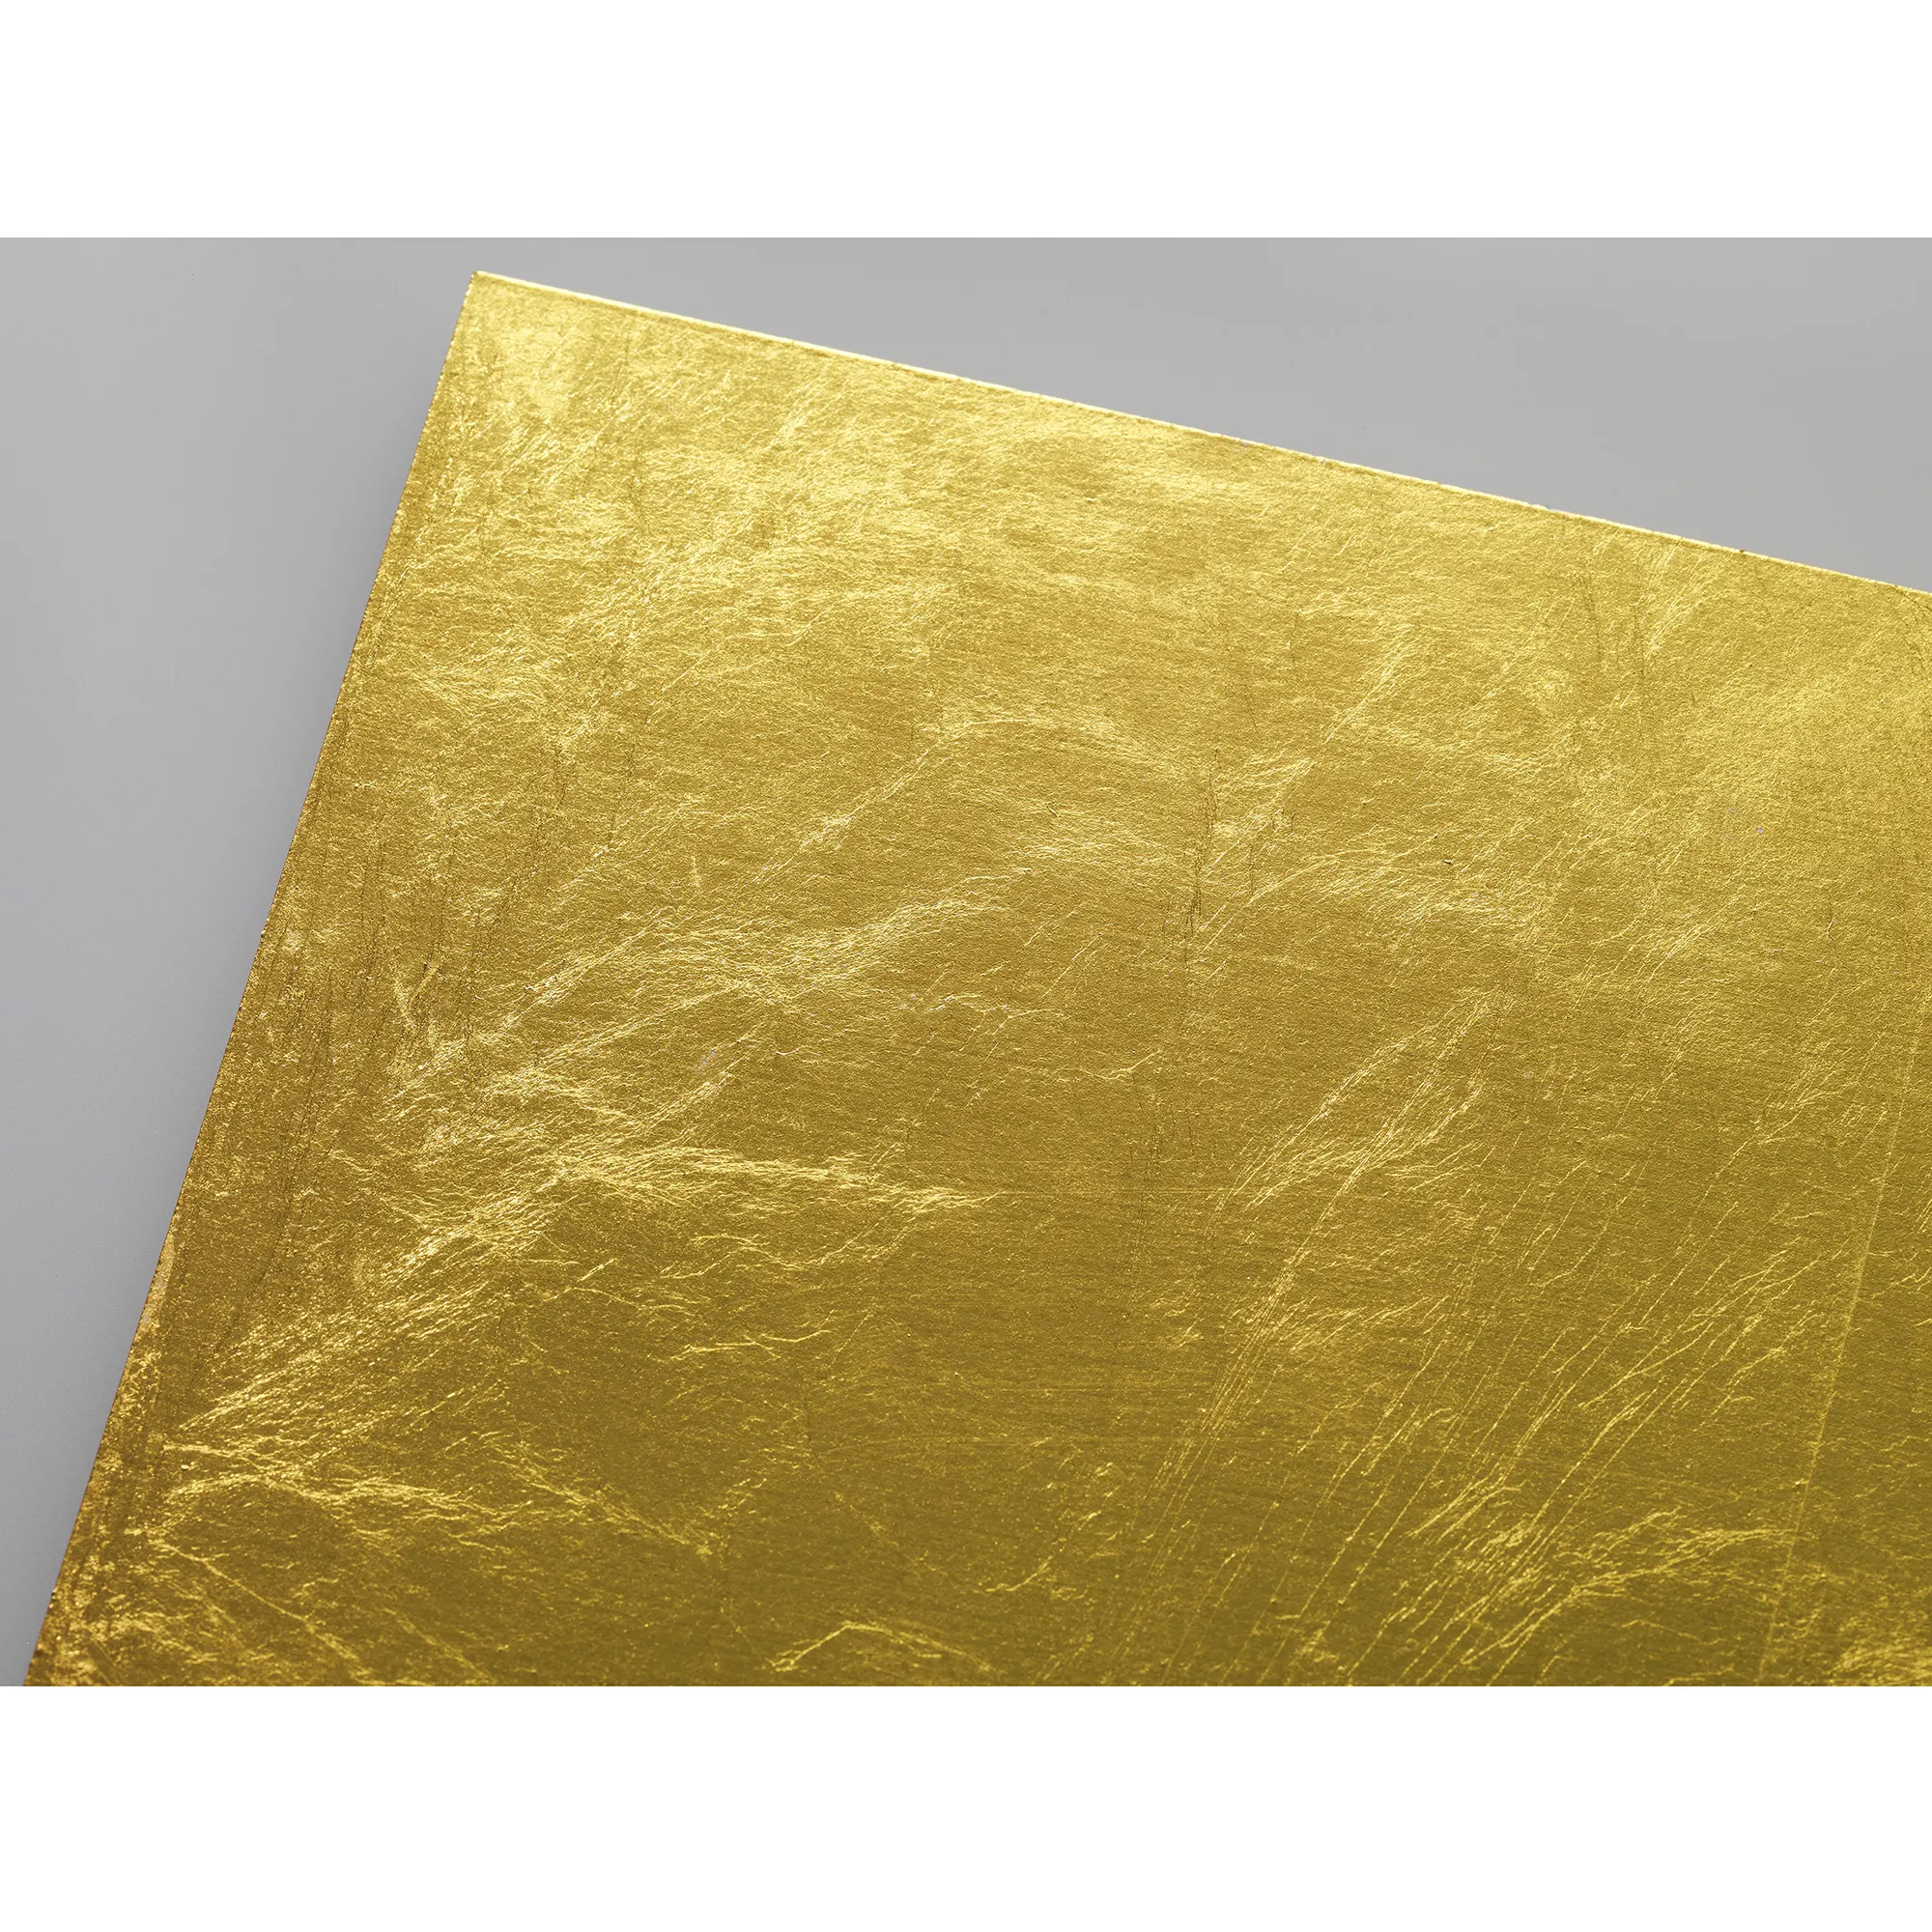 NAKJIAMA METAL soft temper edible gold paper silver foil sheet